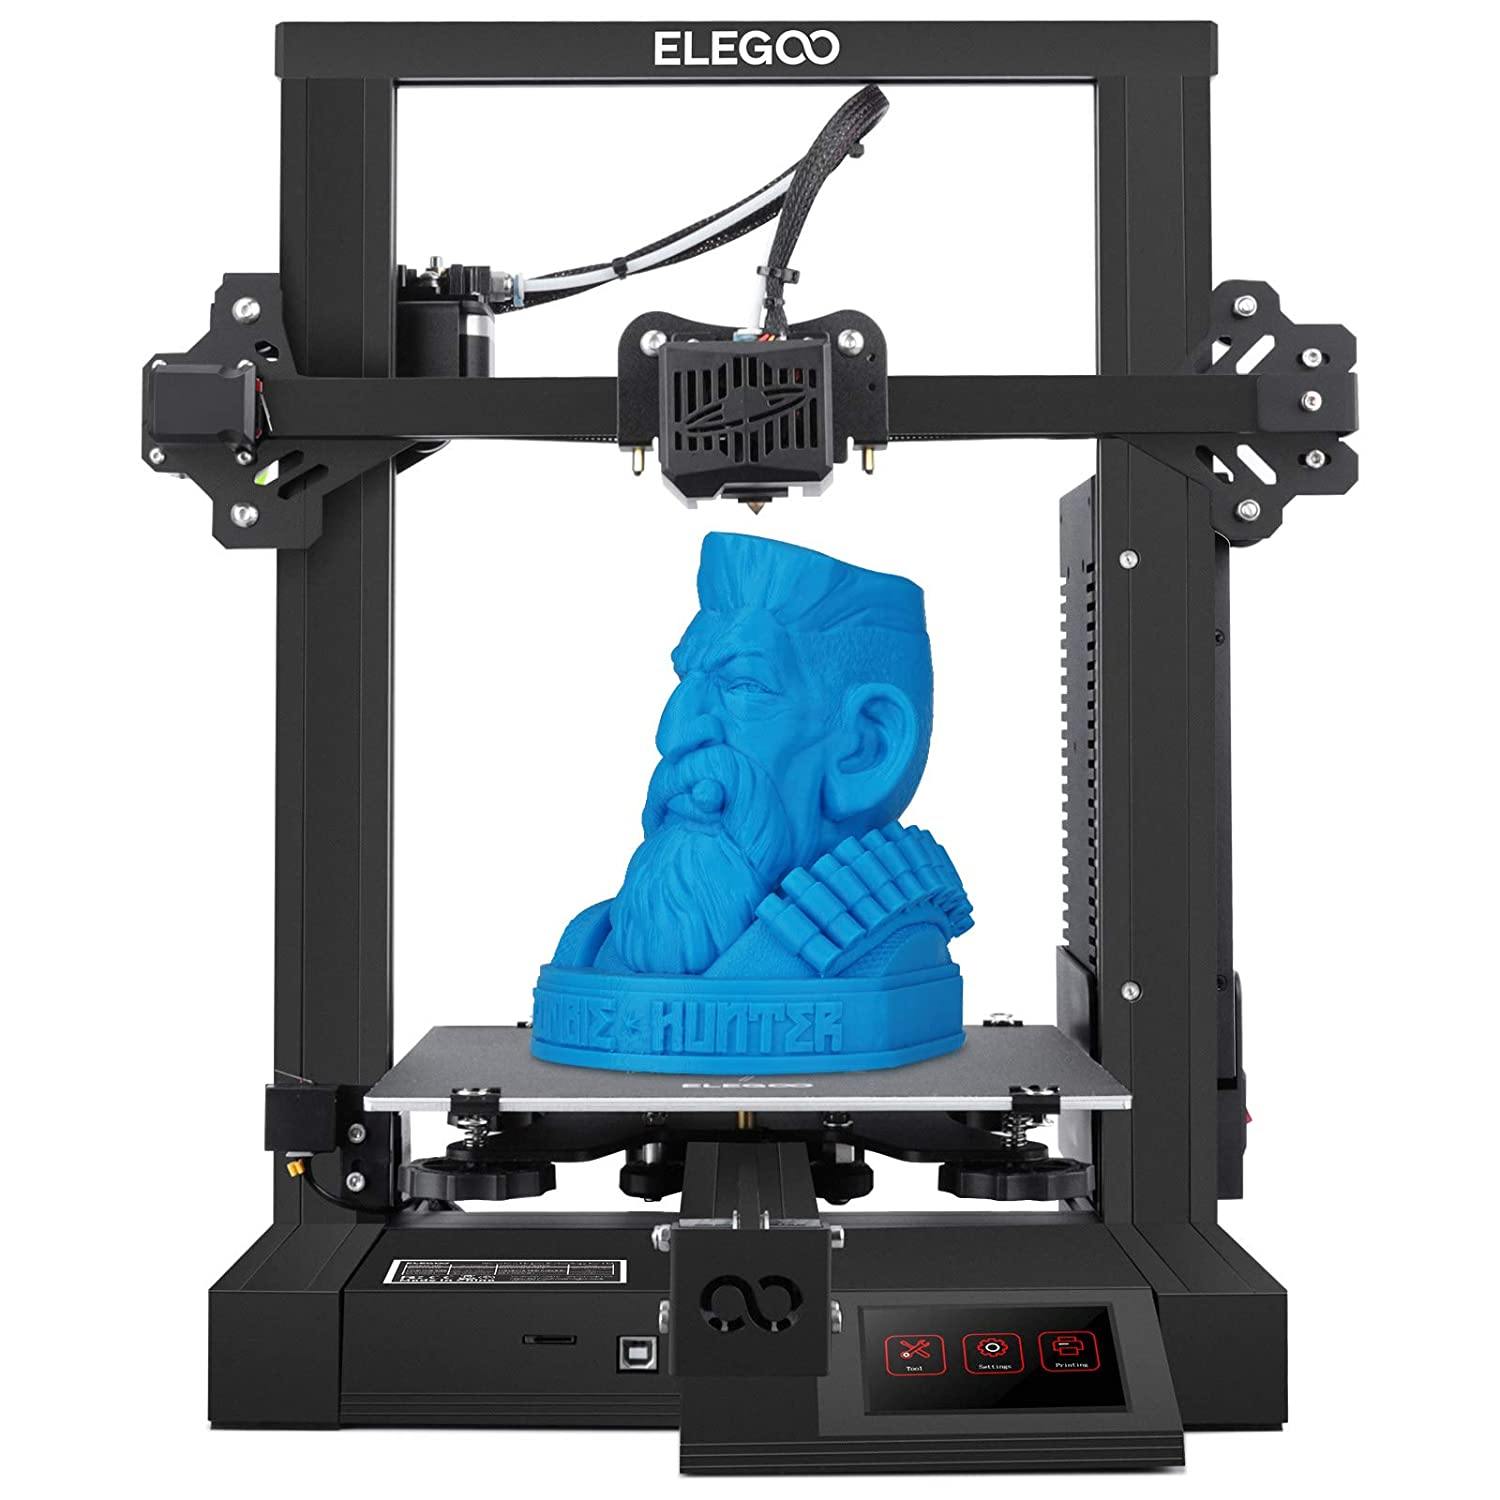 Neptune 2 FDM 3D Printer – ELEGOO Official